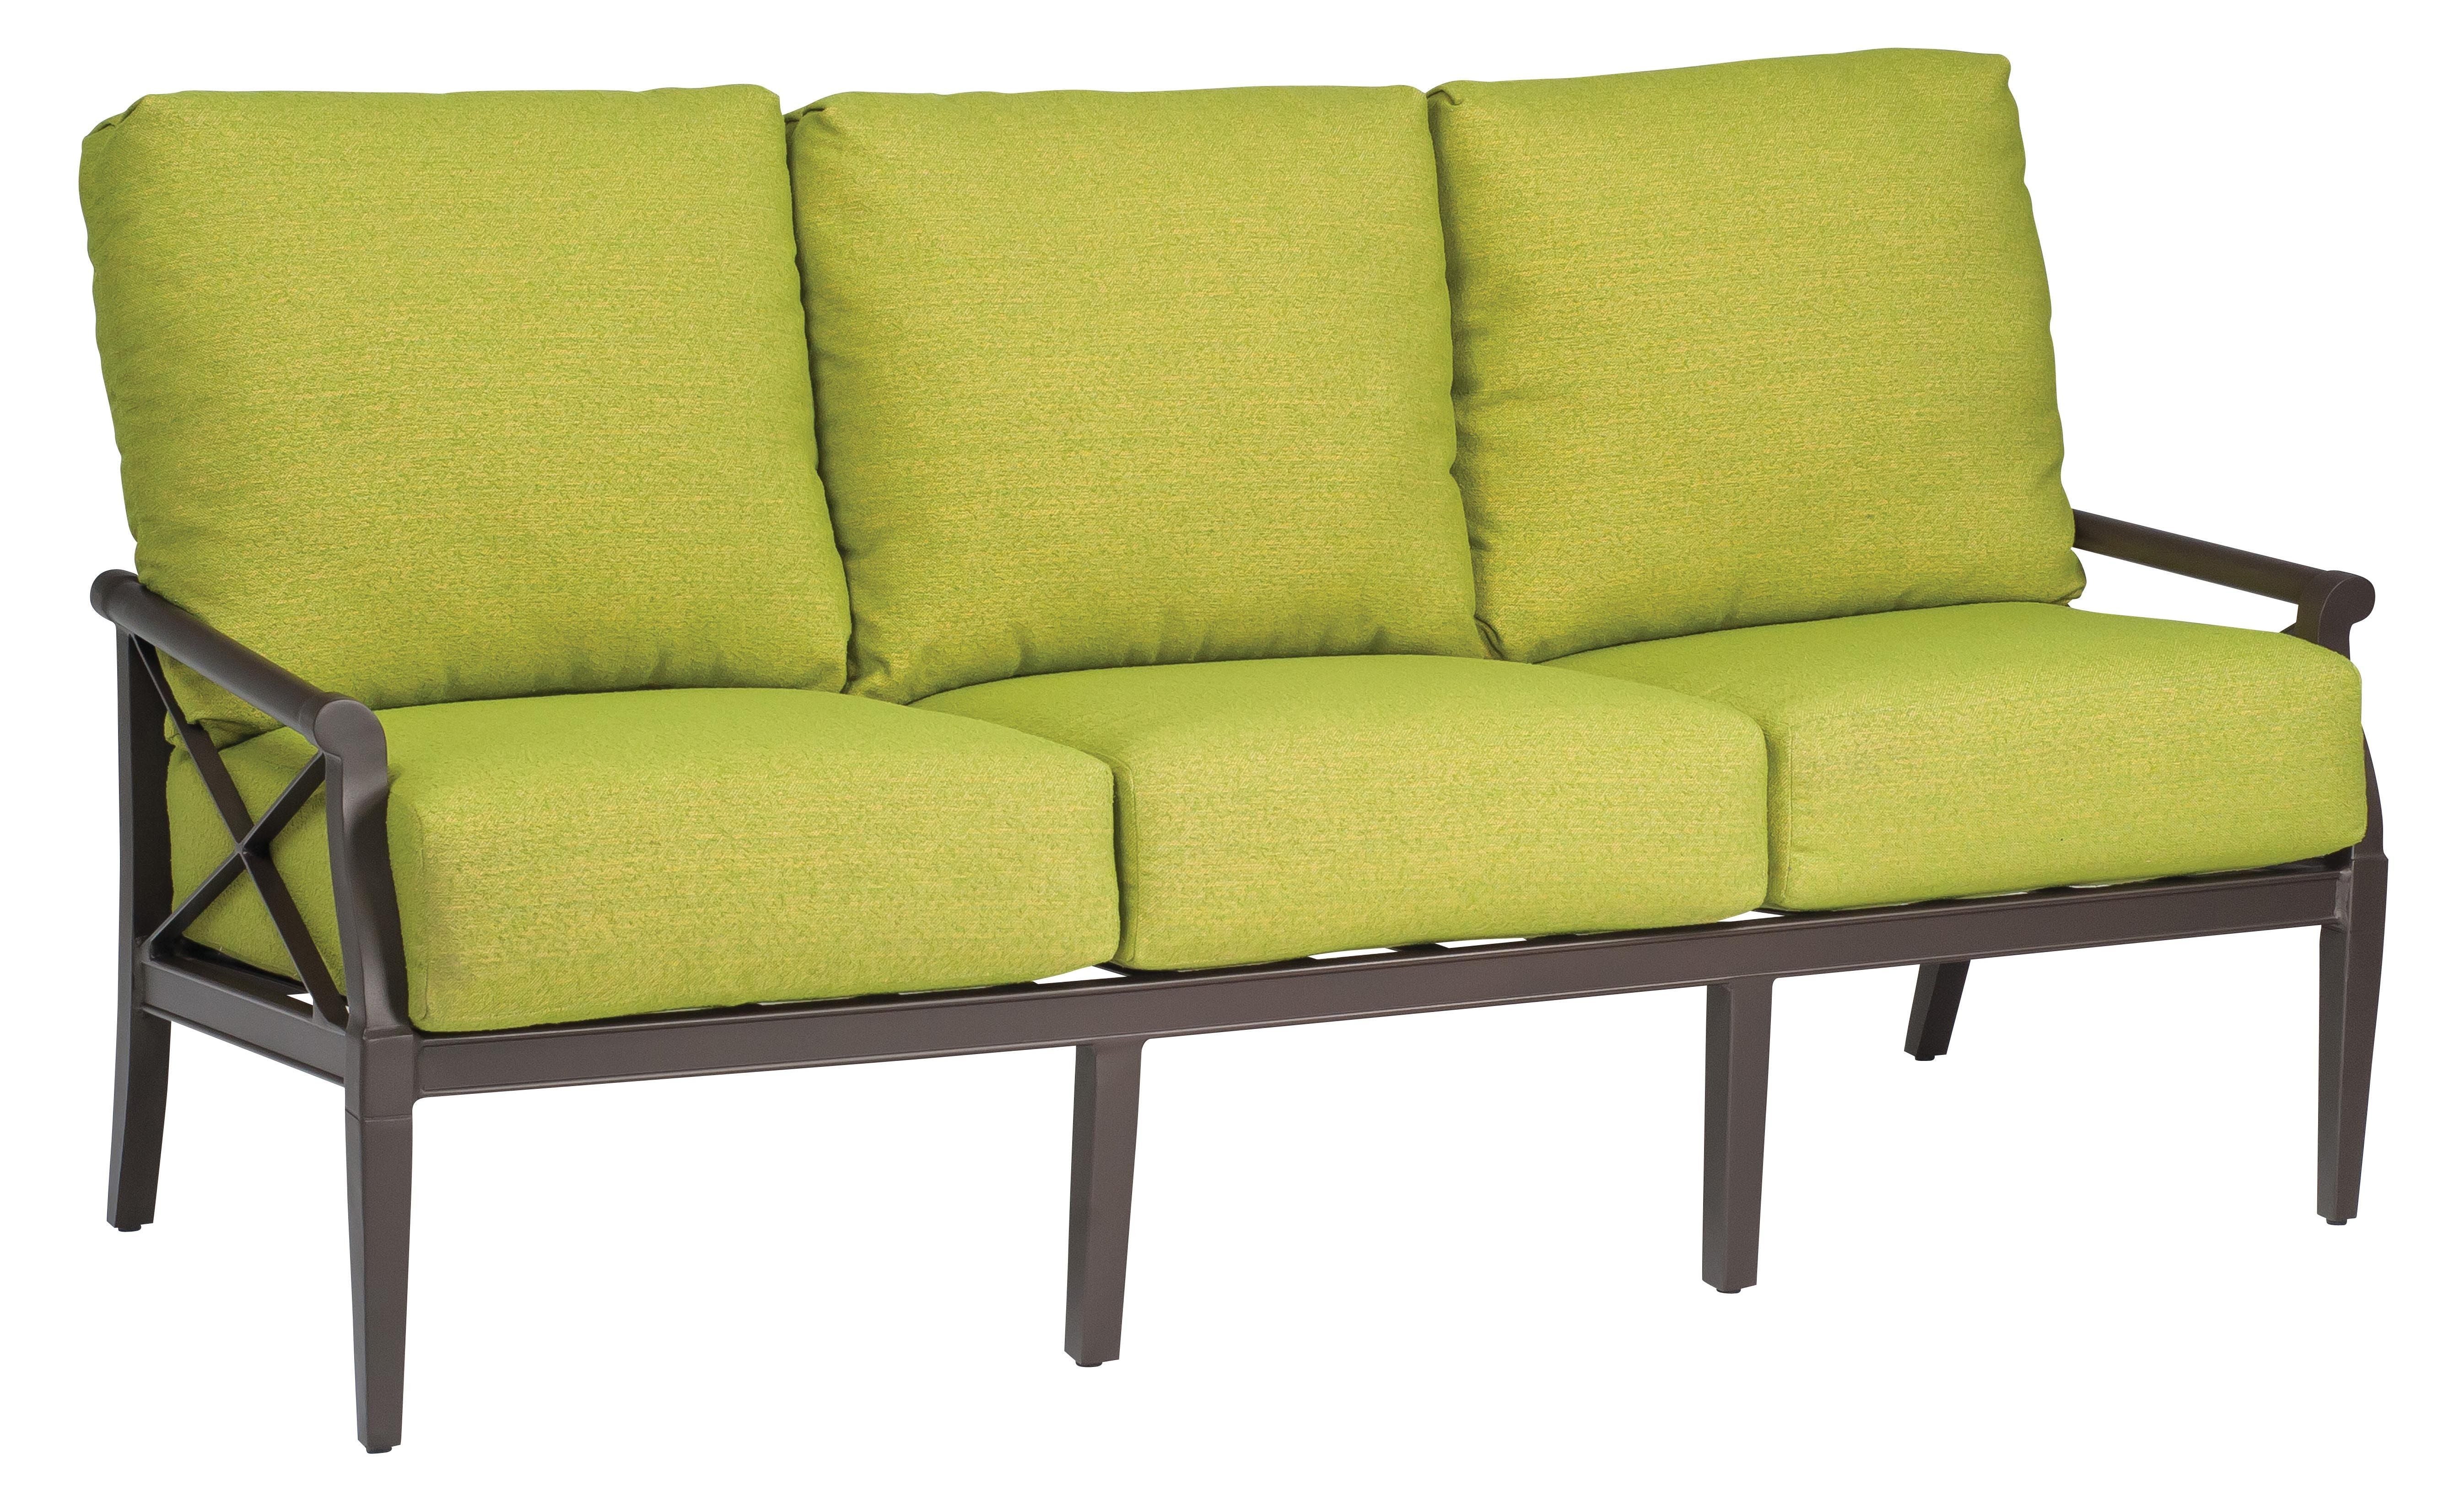 Andover Sofa by Woodard